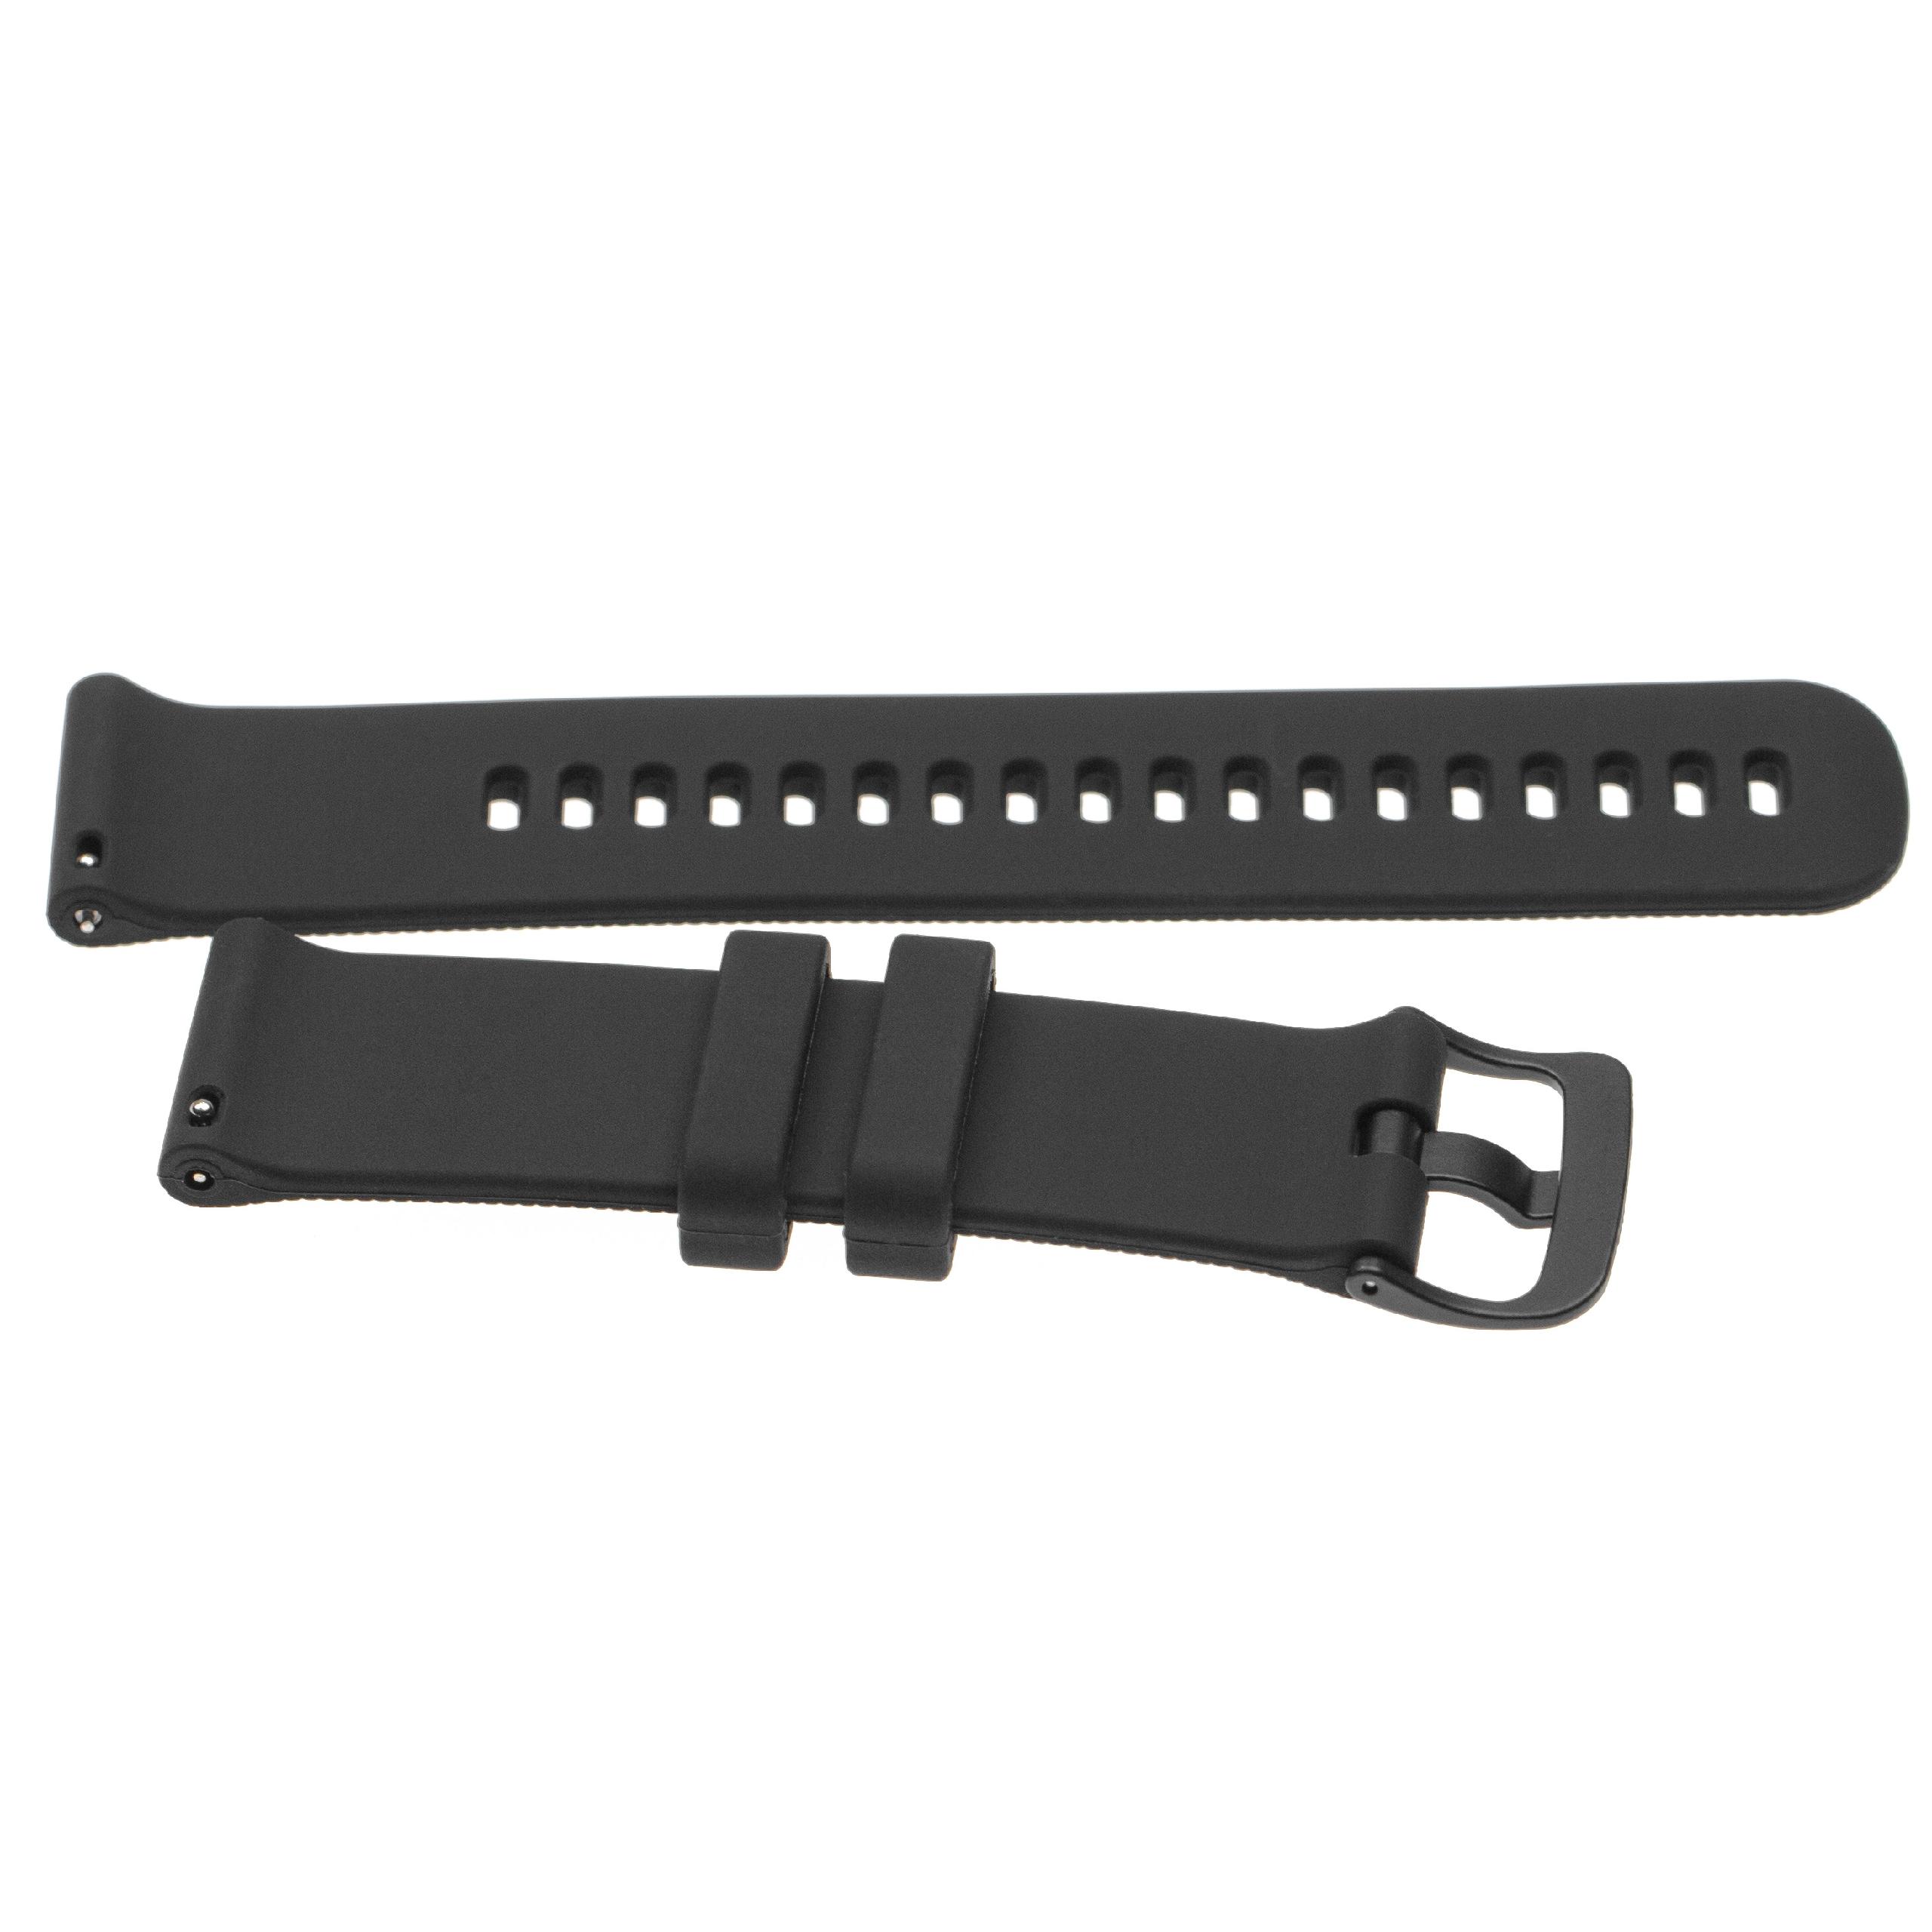 Armband für Garmin Vivoactive Smartwatch - 12,1 + 9,2 cm lang, 22mm breit, Silikon, schwarz